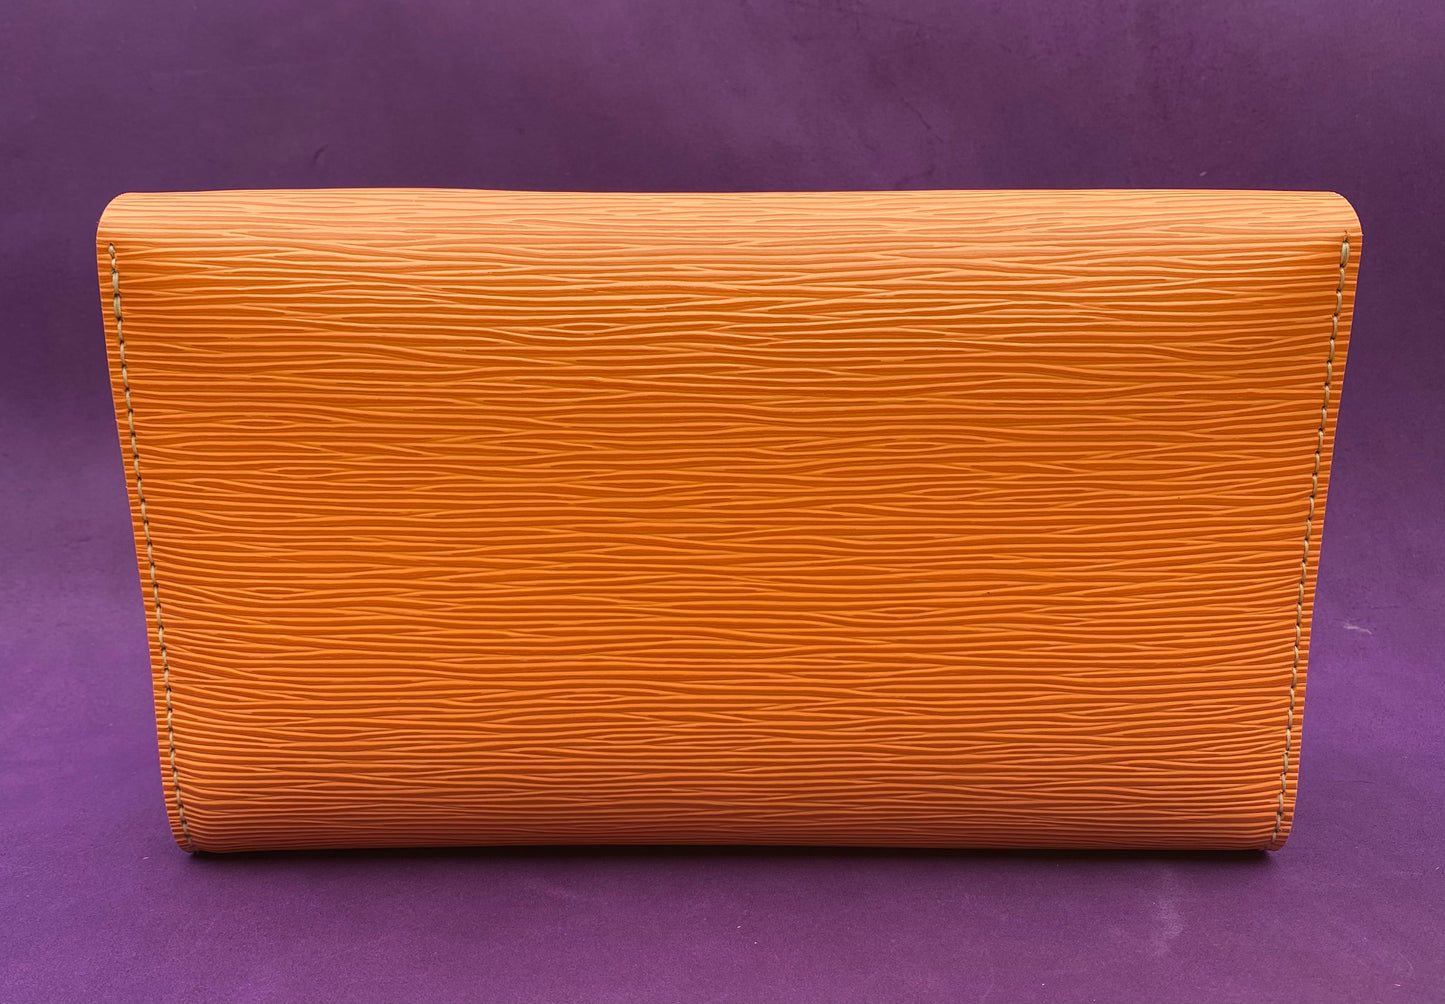 Handmade Epi Leather Clutch/Envelope Bag